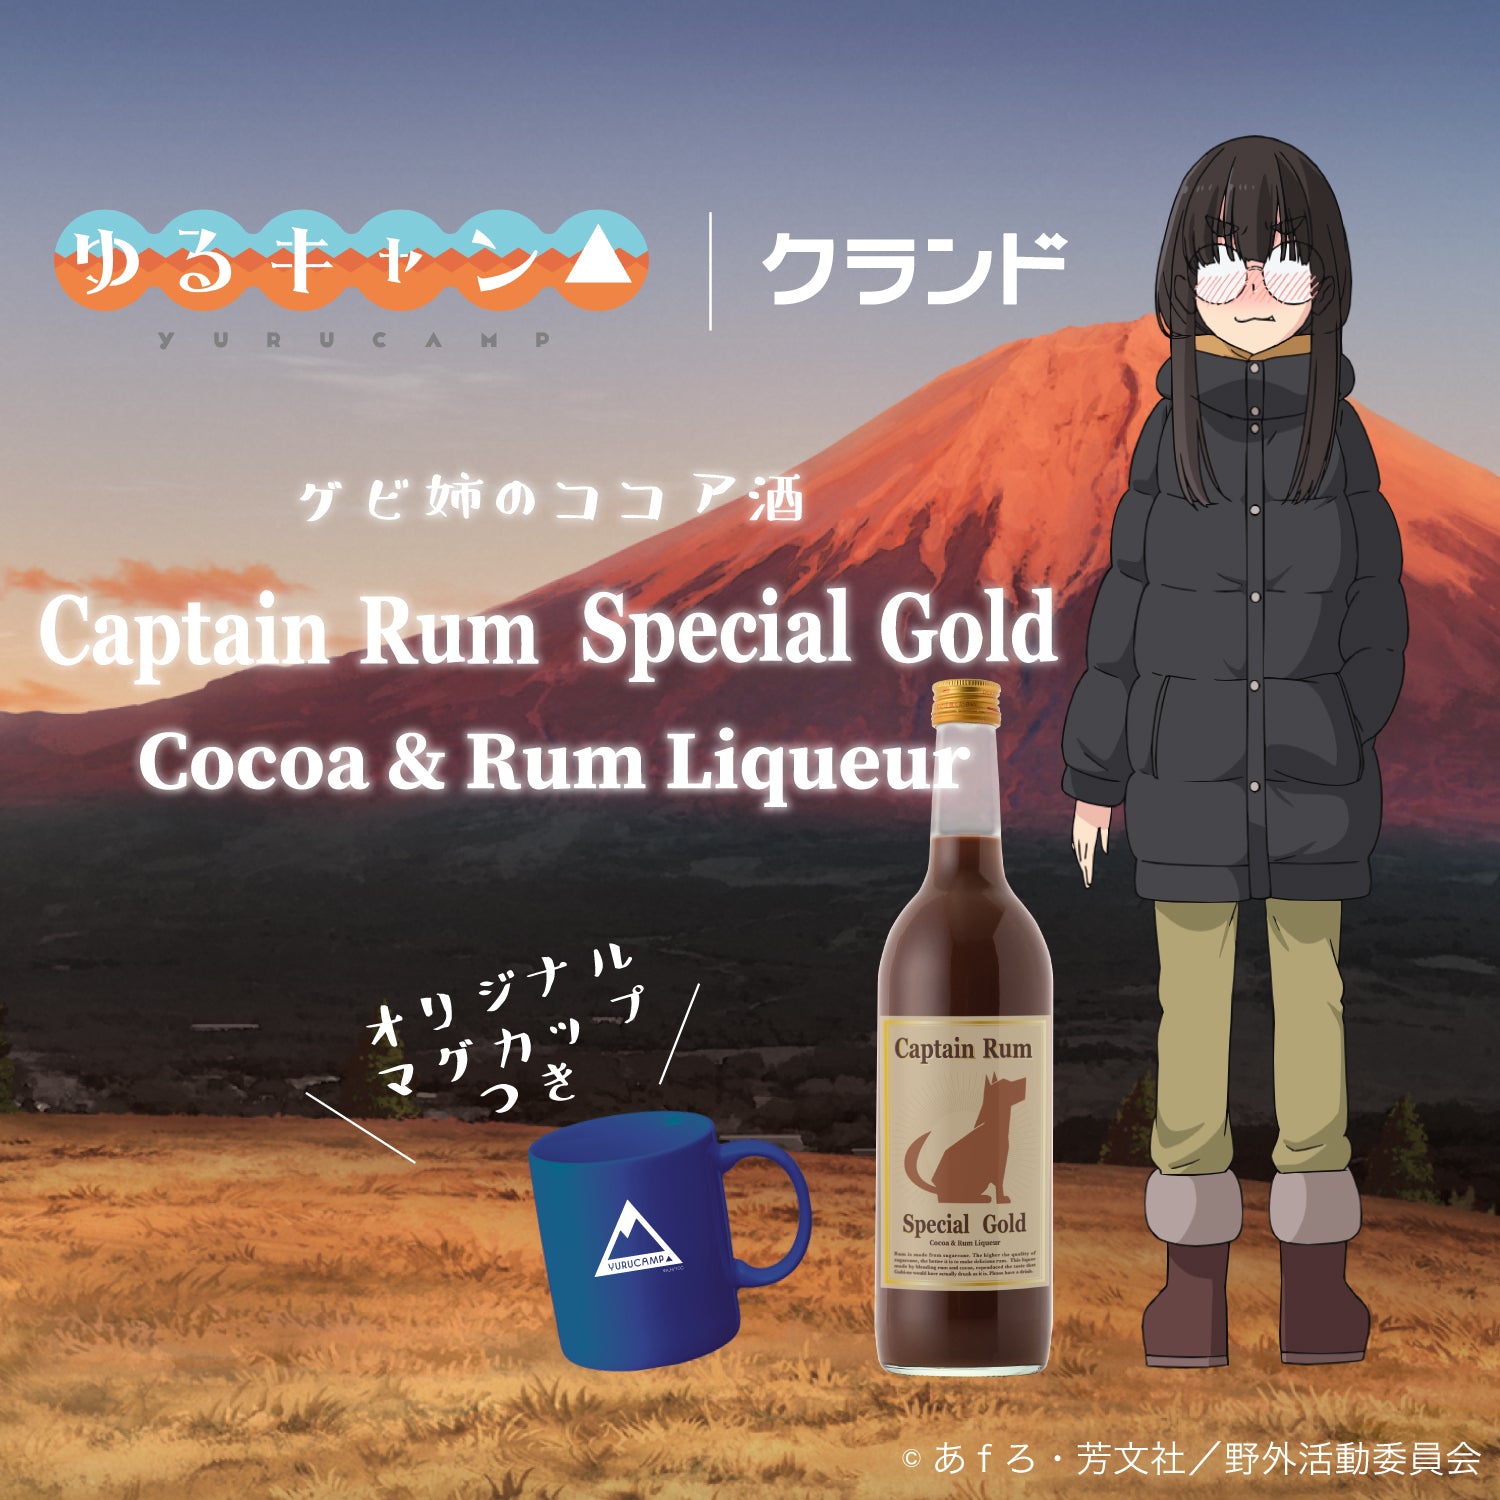 【マグカップ付き】Captain Rum Special Gold Cocoa & Rum Liqueur